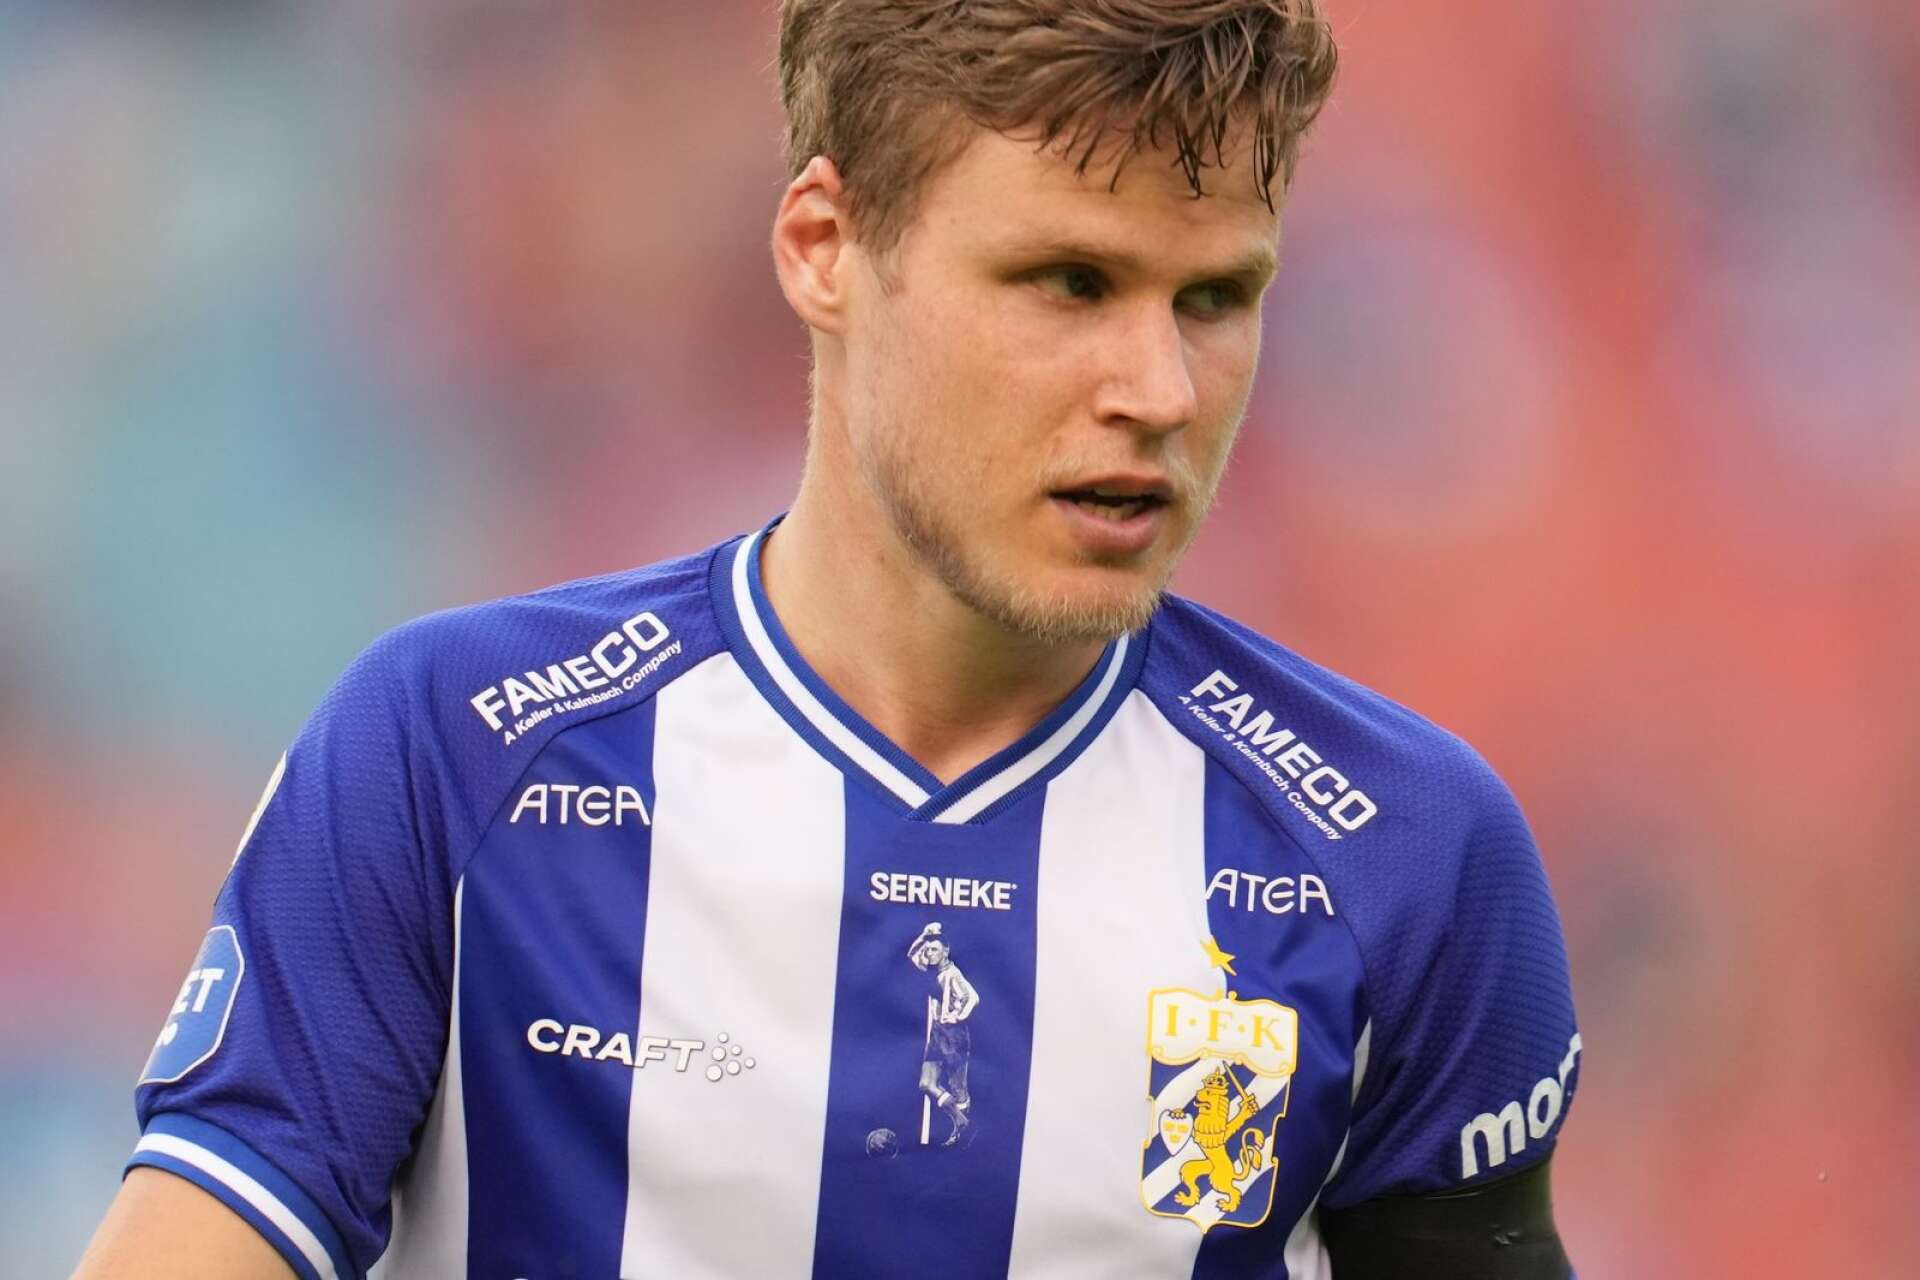 Gustaf Norlin får gott om speltid i IFK Göteborg, trots att klubben värvar in landslagsspelare efter landslagsspelare.